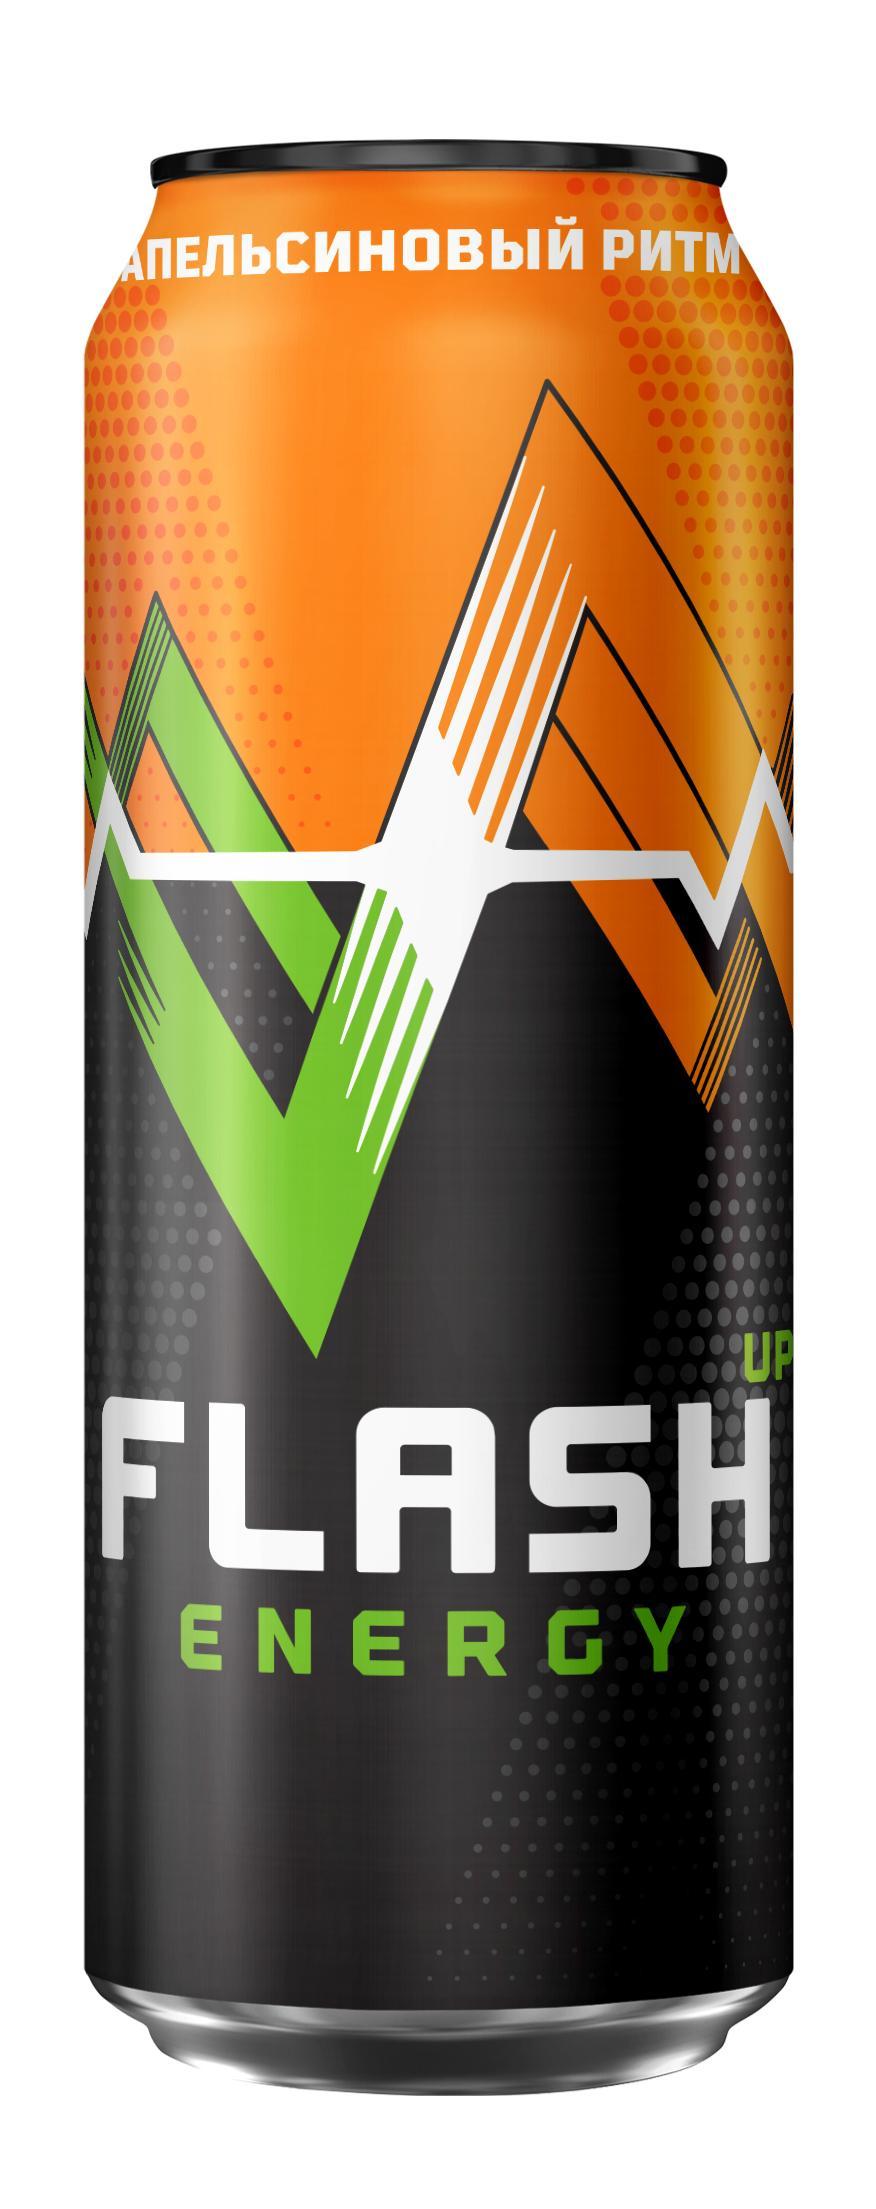 Напиток энергетический Flash up Energy Апельсиновый Ритм безалкогольный газированный 450 мл., ж/б